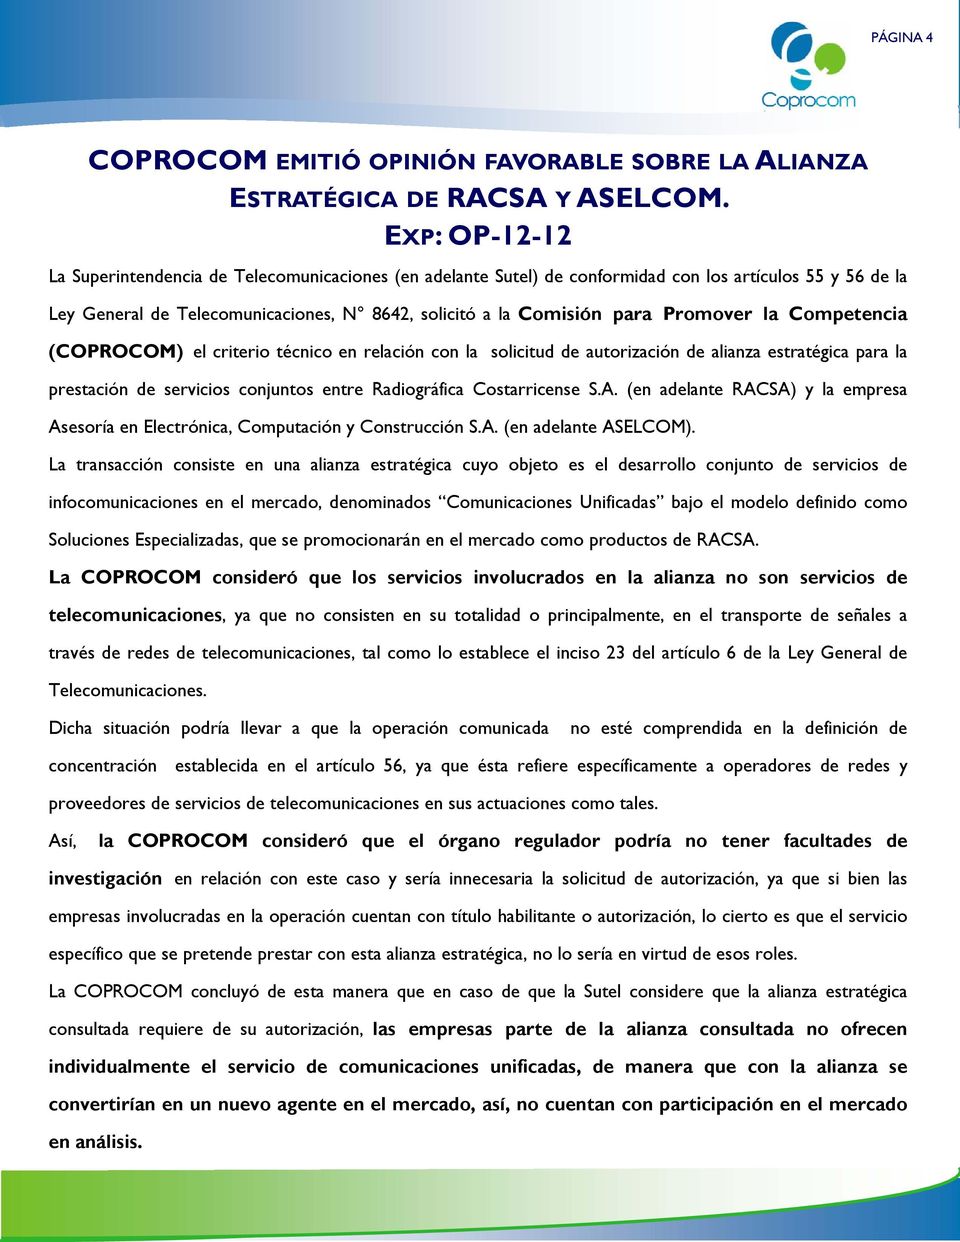 Promover la Competencia (COPROCOM) el criterio técnico en relación con la solicitud de autorización de alianza estratégica para la prestación de servicios conjuntos entre Radiográfica Costarricense S.